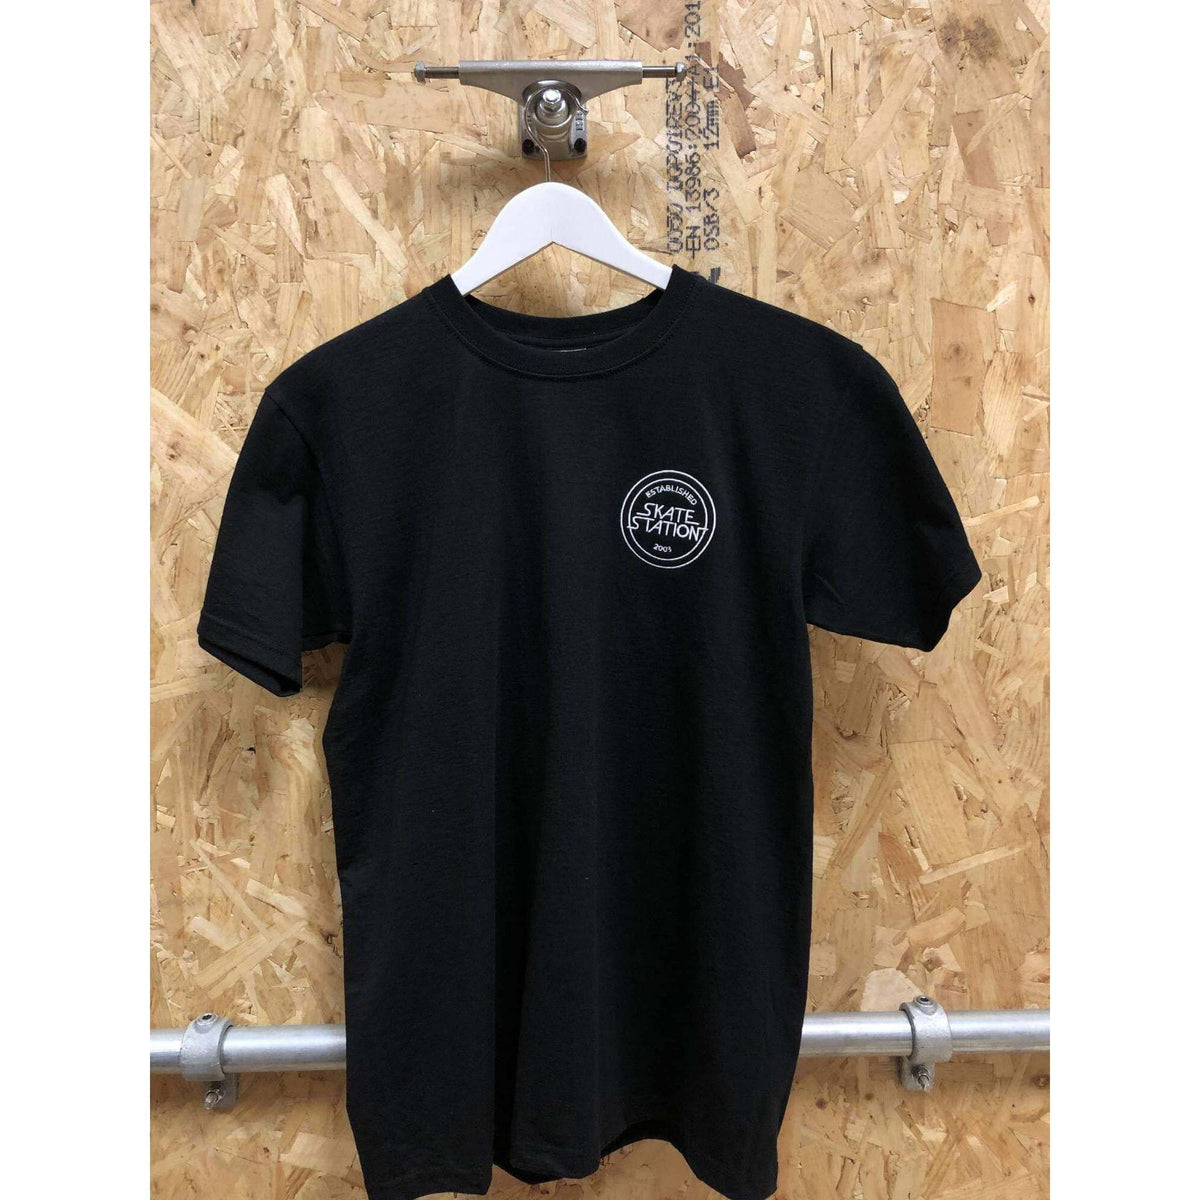 SkateStation T-Shirt Black